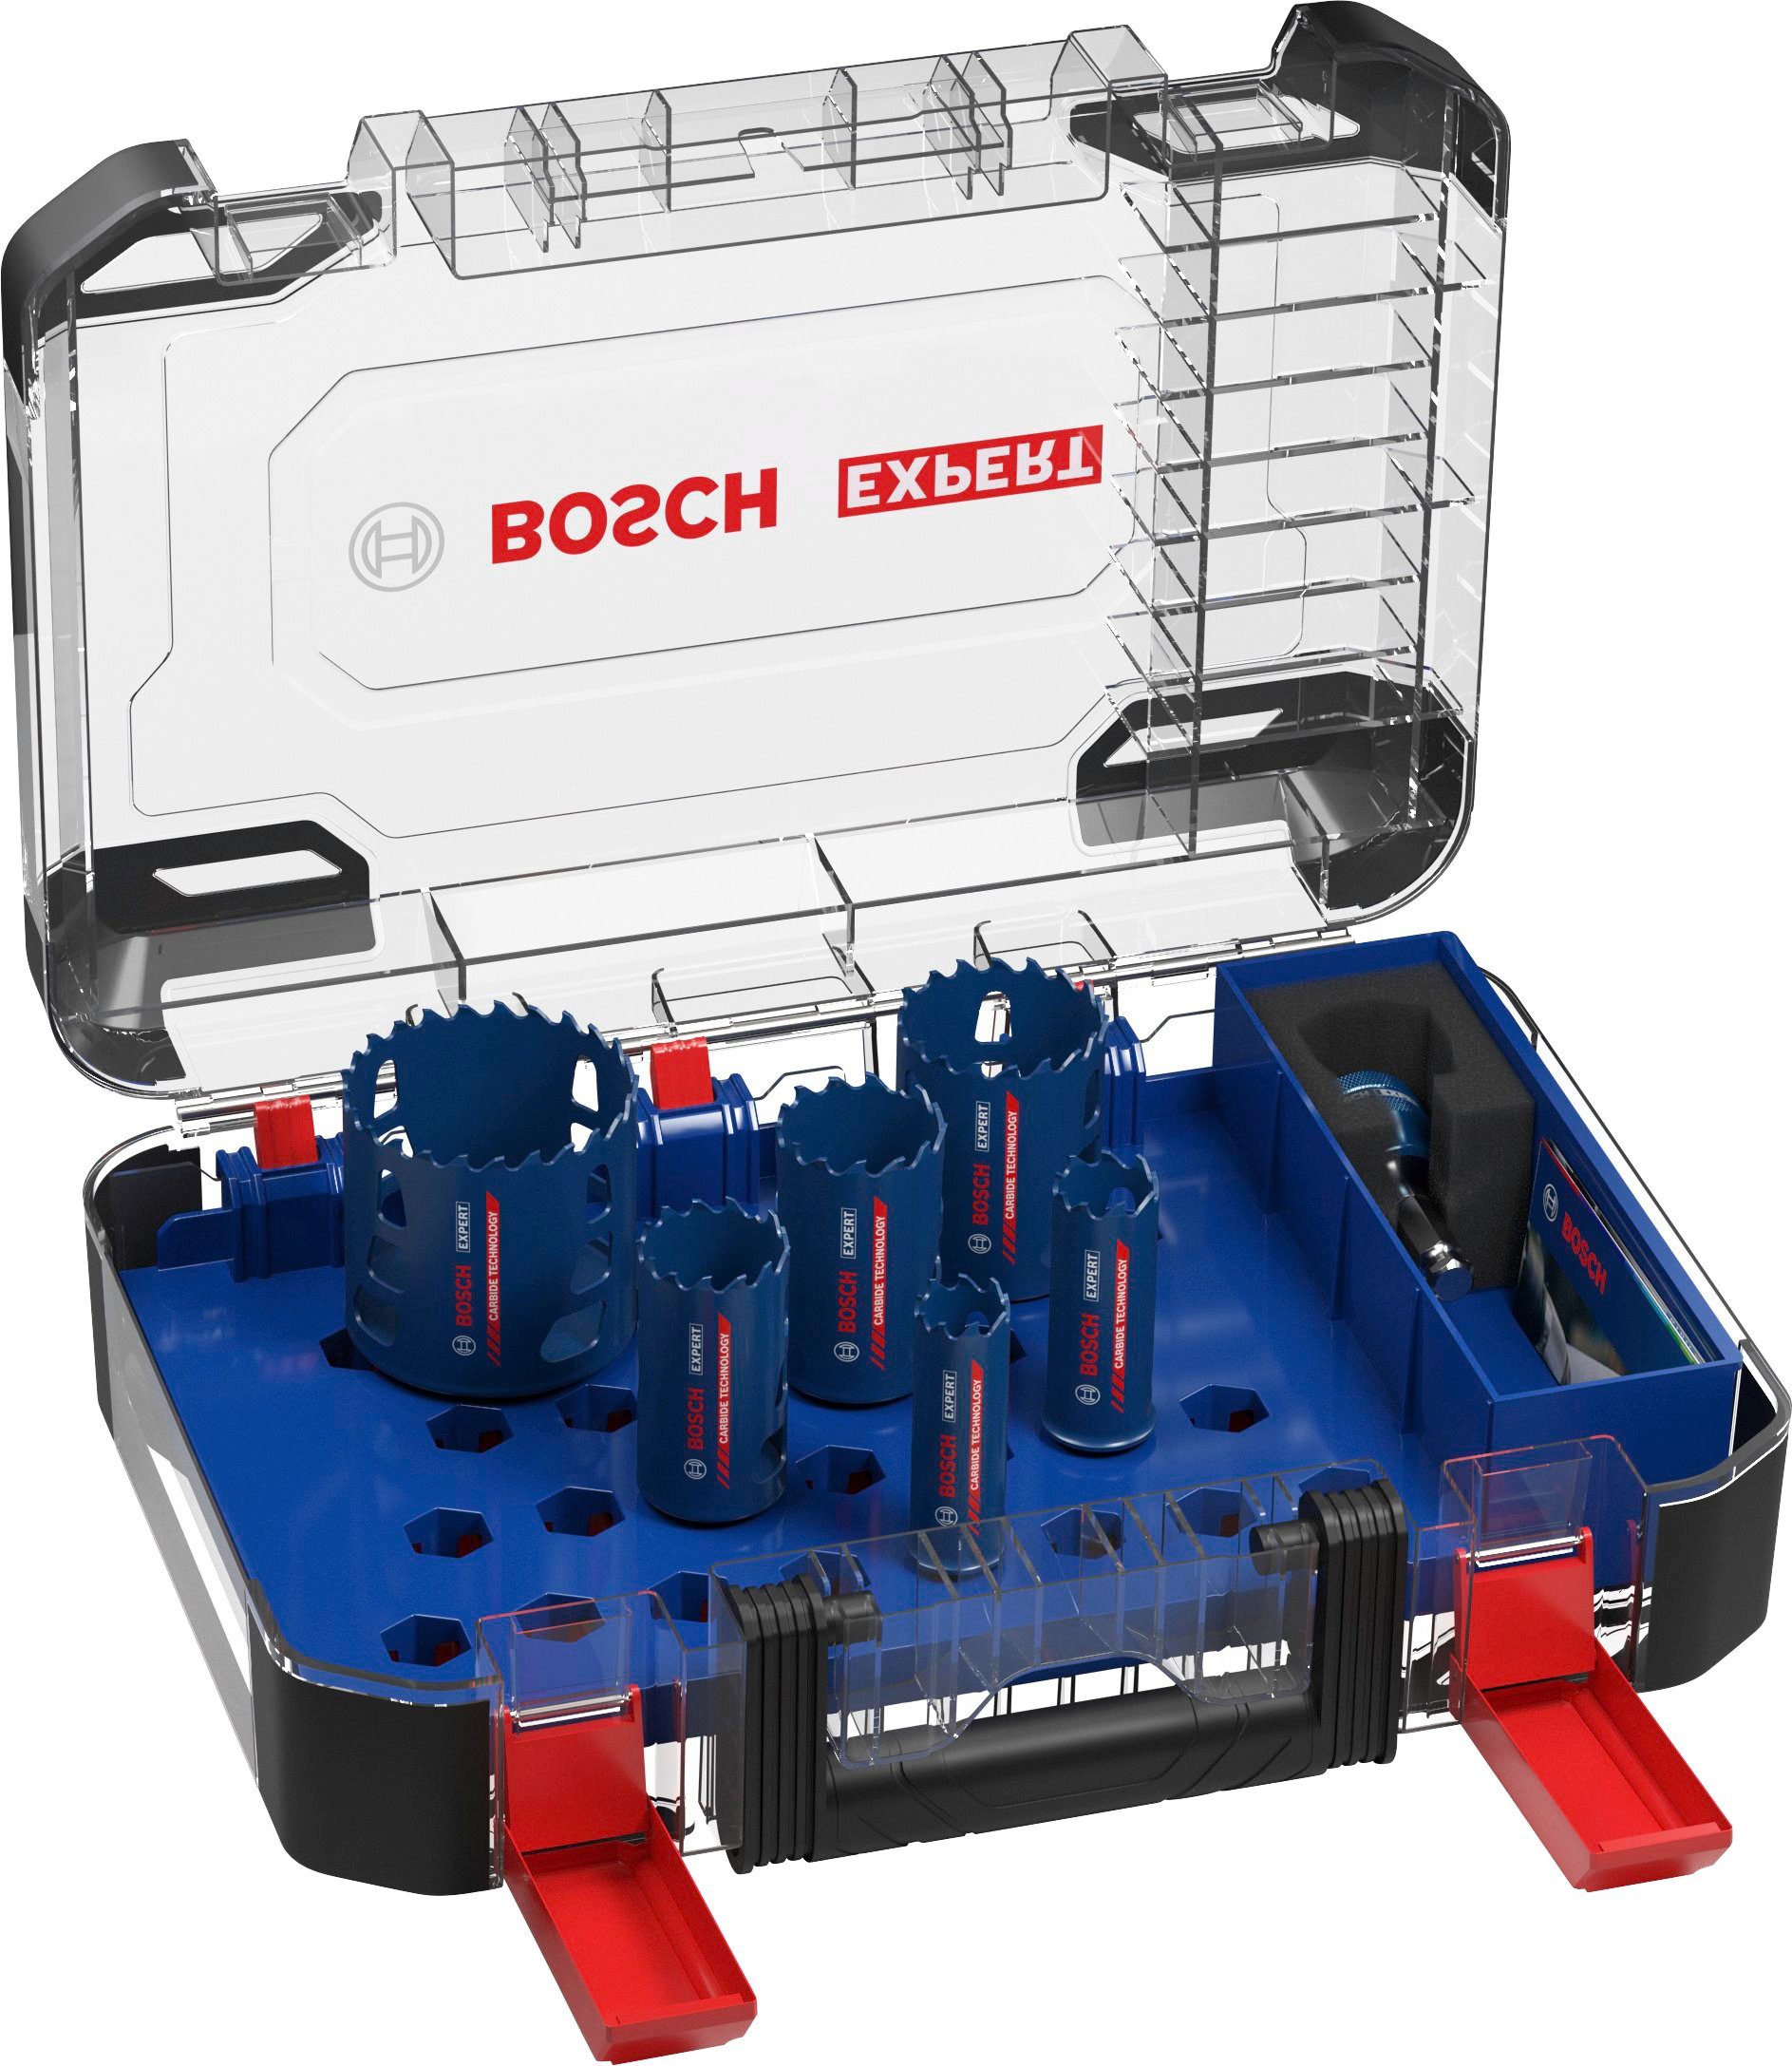 Aufnahmesystem: 22/25/35/40/51/68 Set, Lochsäge mm, 9-tlg., Power-Change-Adapter, Material, Bosch EXPERT Bosch Professional Tough Standard-Bohrfutter